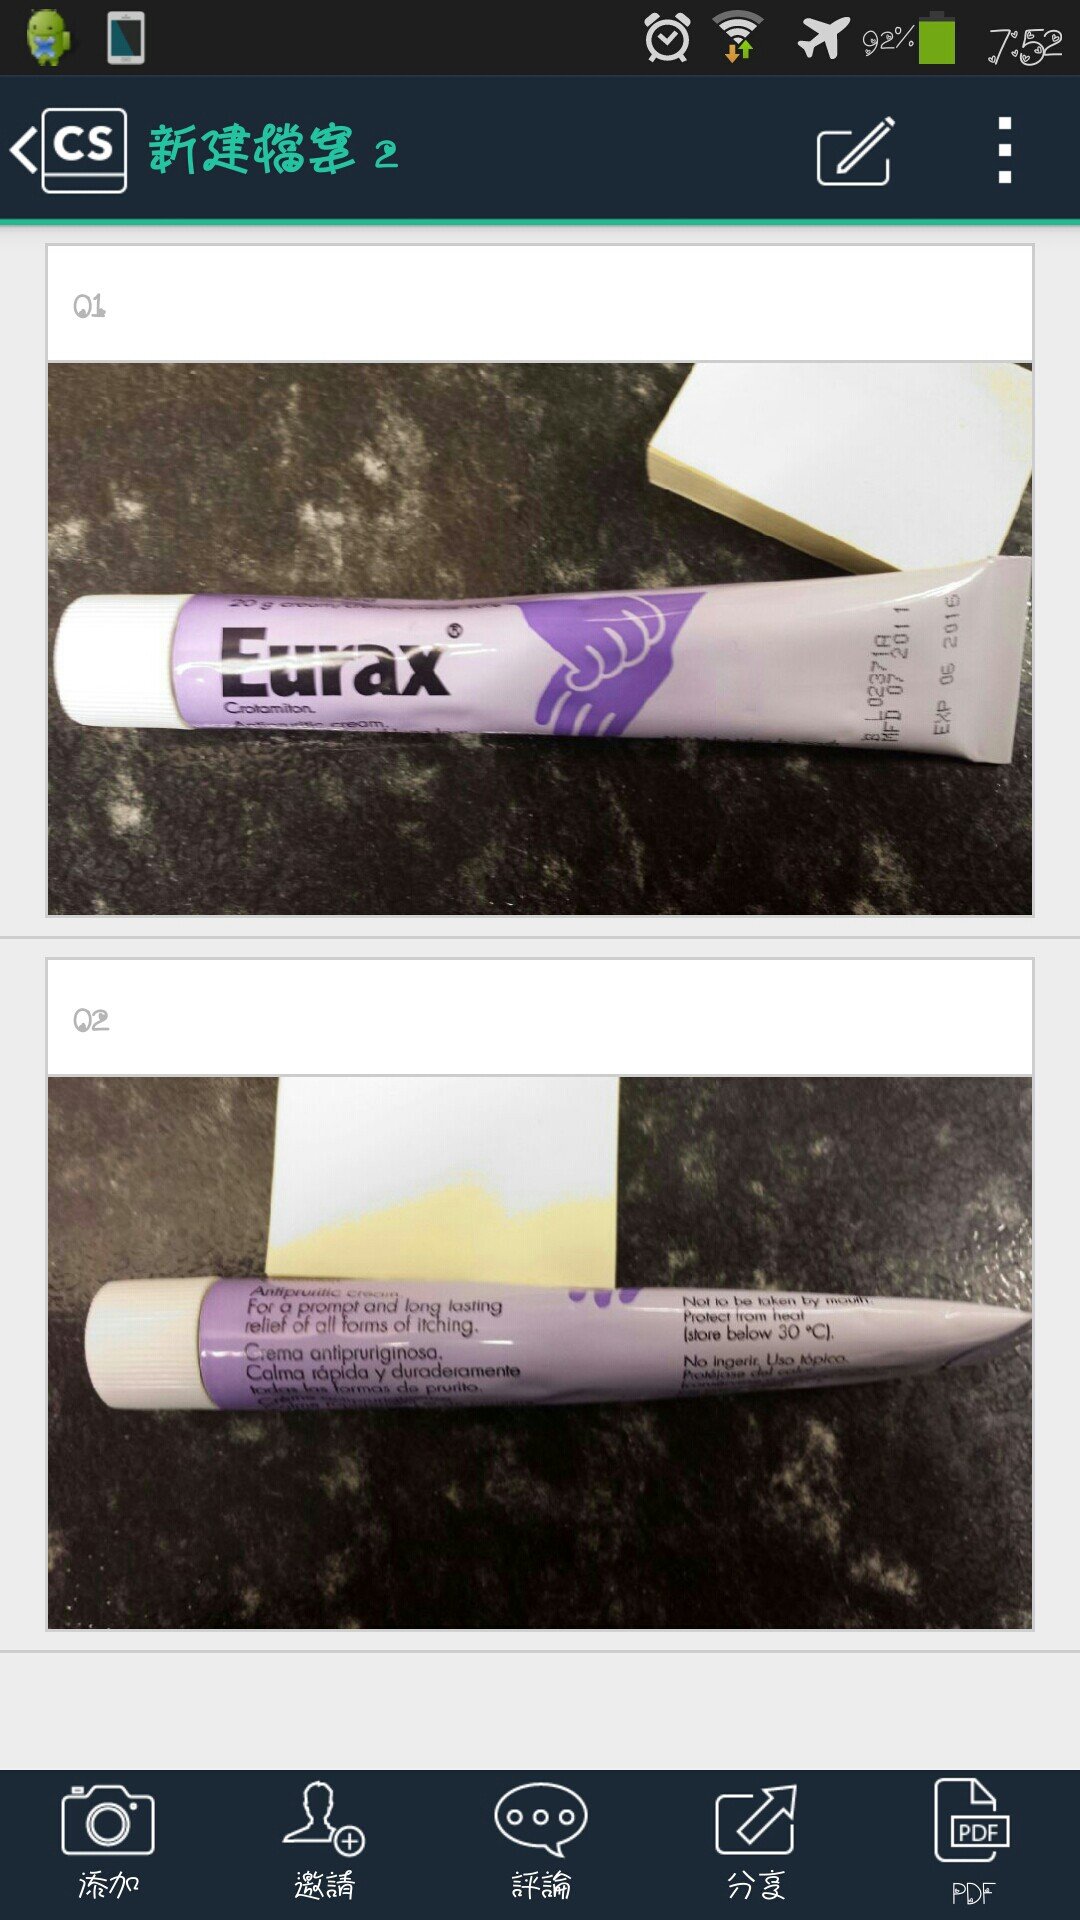 The Daily News Eurax藥膏 Crotamiton C E œe A A E E E Cœ Eurax Cream Is For The Fast Relief Of Itching And Skin Irritation